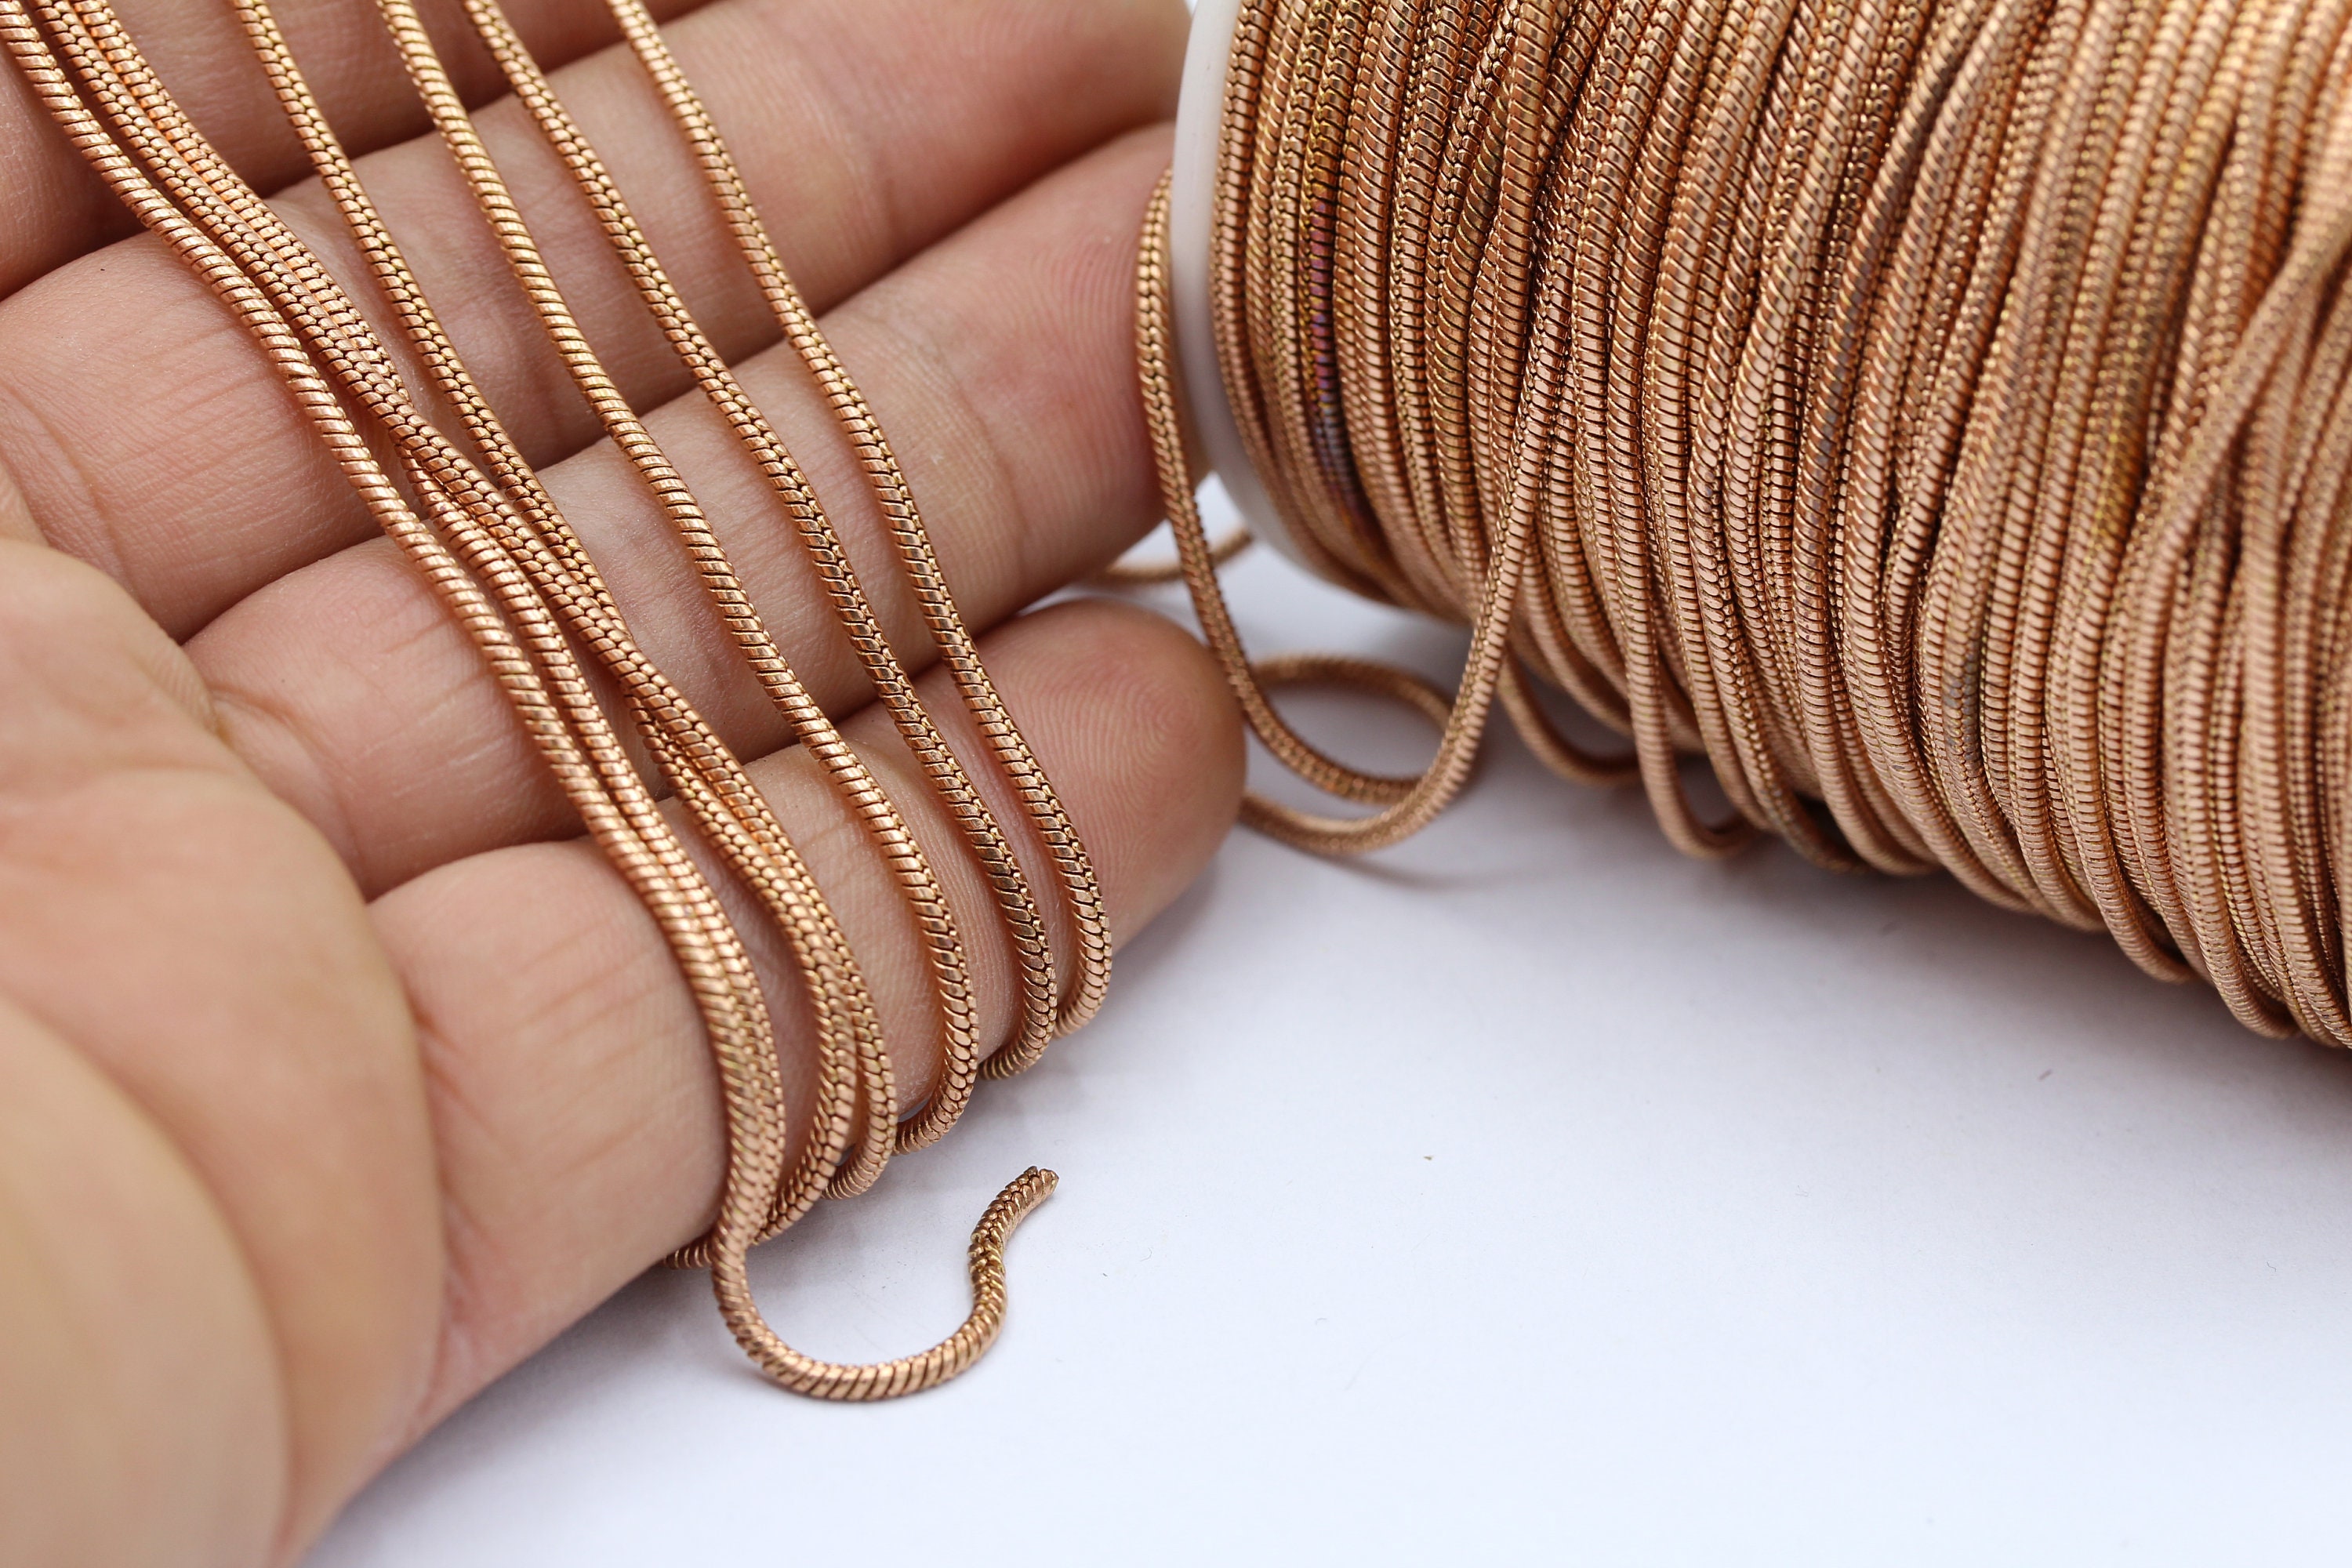  ZABARE Bracelet Chains for Jewelry Making, 15 PCS Stainless  Steel Snake Chain Bracelets Bulk 7.87 Snake Chain Bracelets for Women  Jewelry Making : Arts, Crafts & Sewing